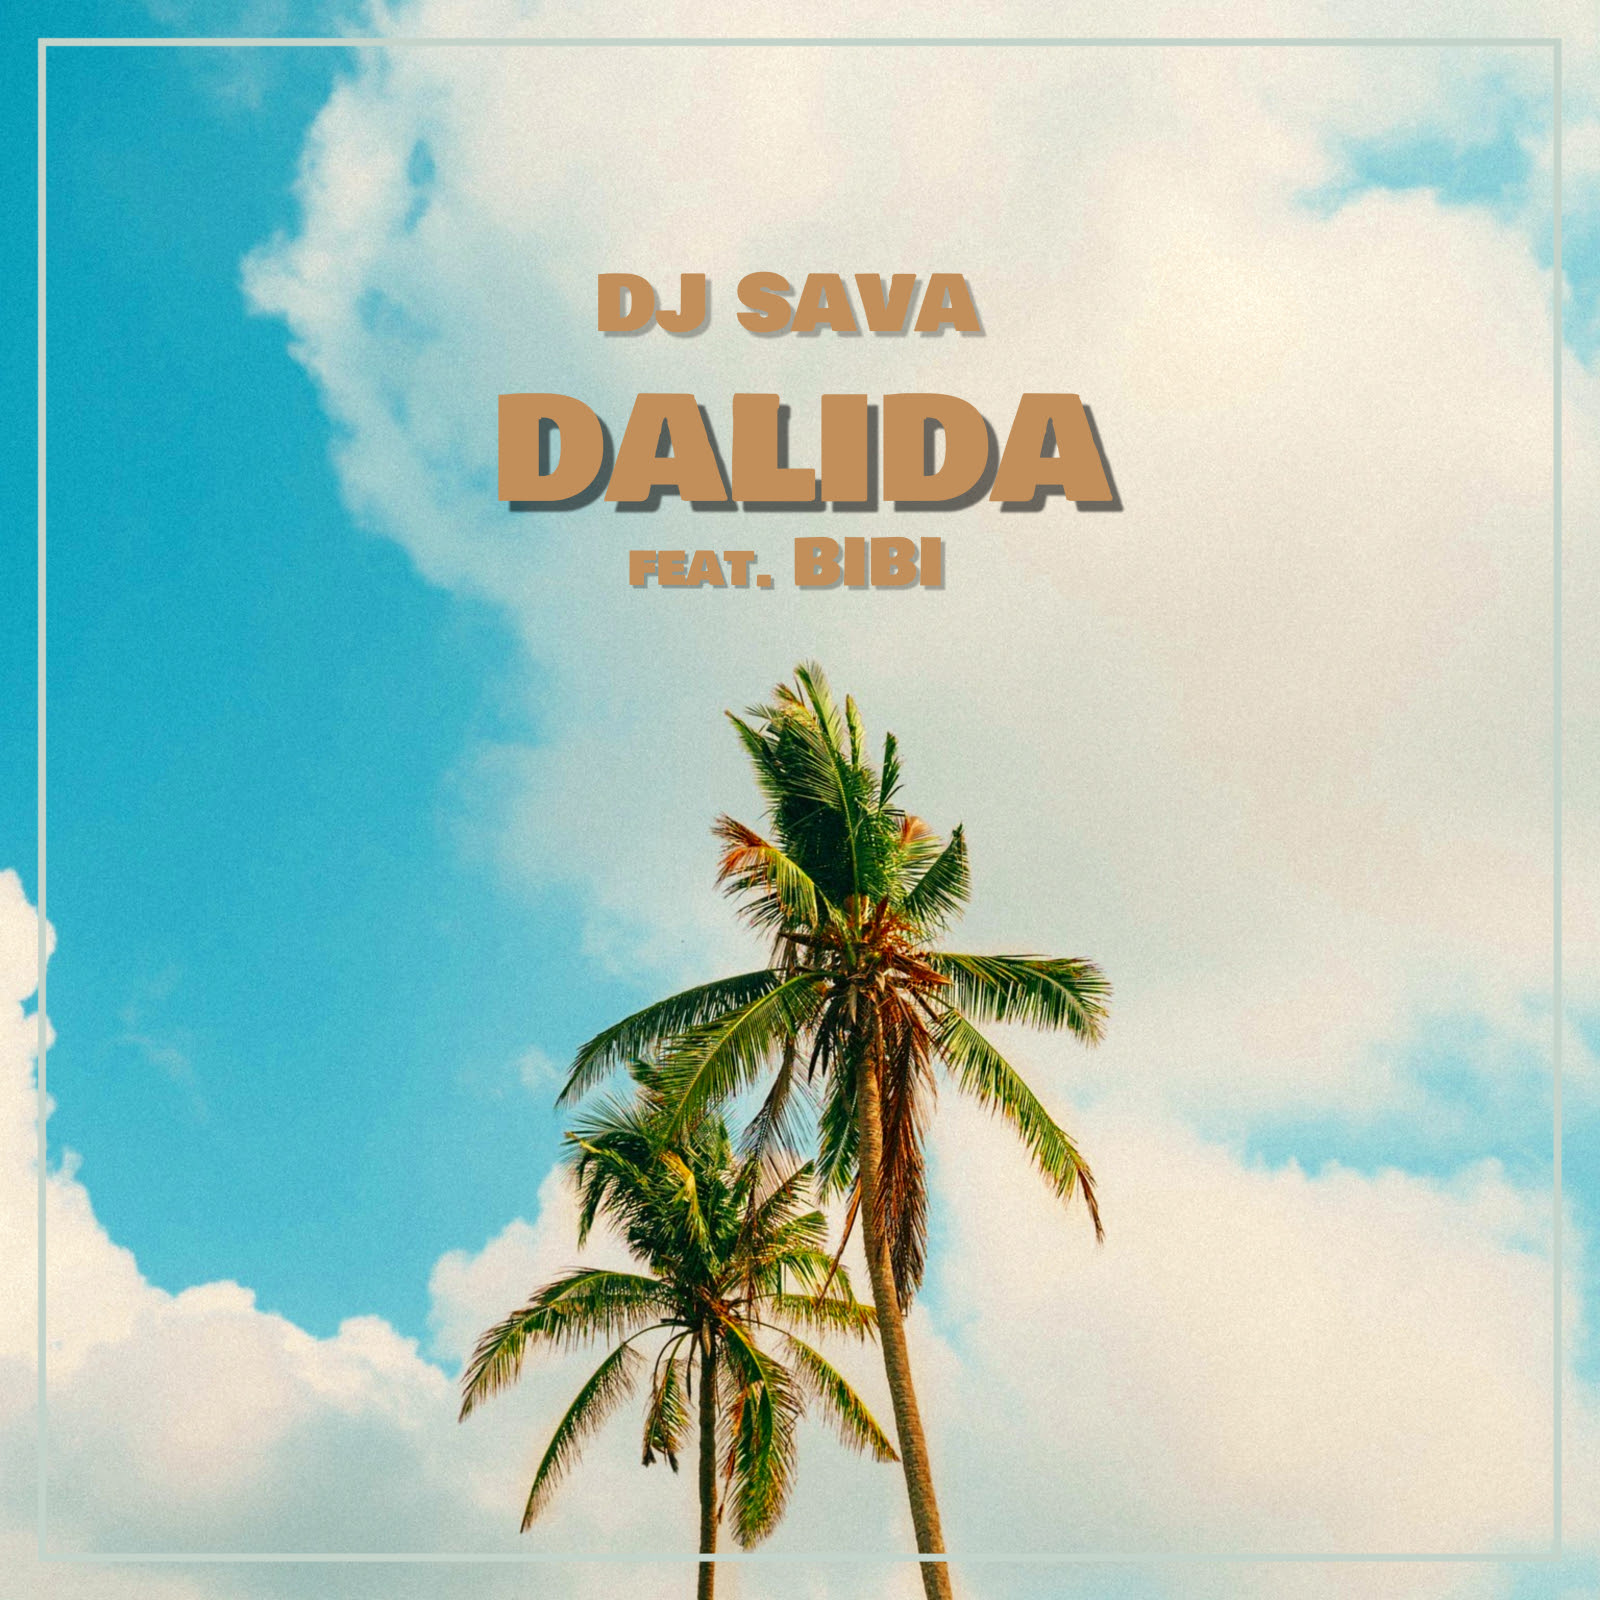 DJ Sava a colaborat pentru prima dată cu BiBi și a lansat Dalida. Sună bine?